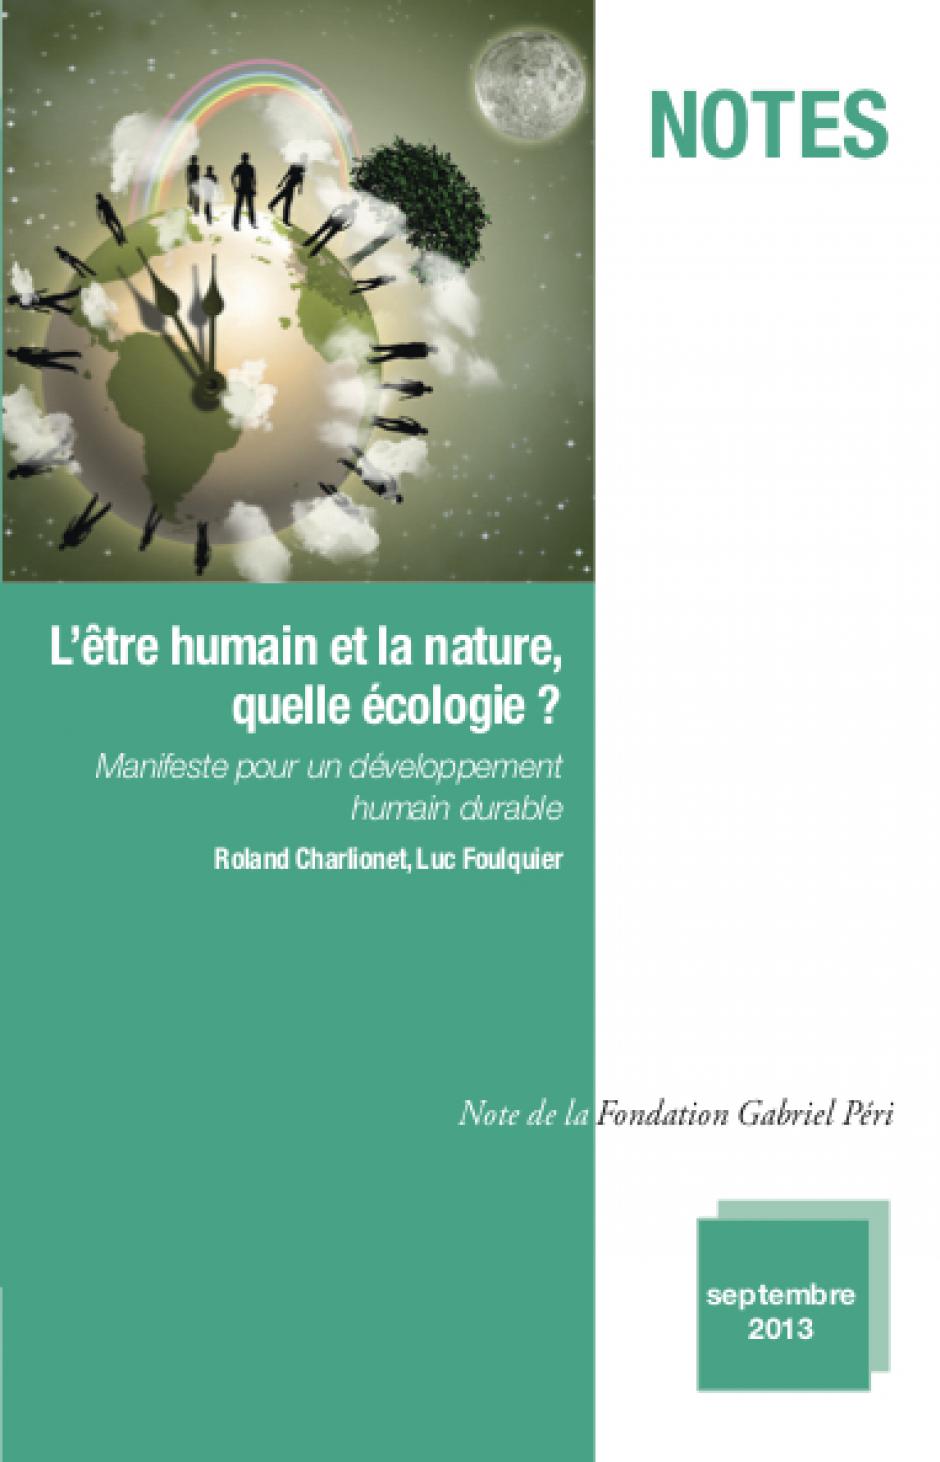 L'être humain et la nature : quelle écologie ? - Texte de Luc Foulquier et Roland Charlionet